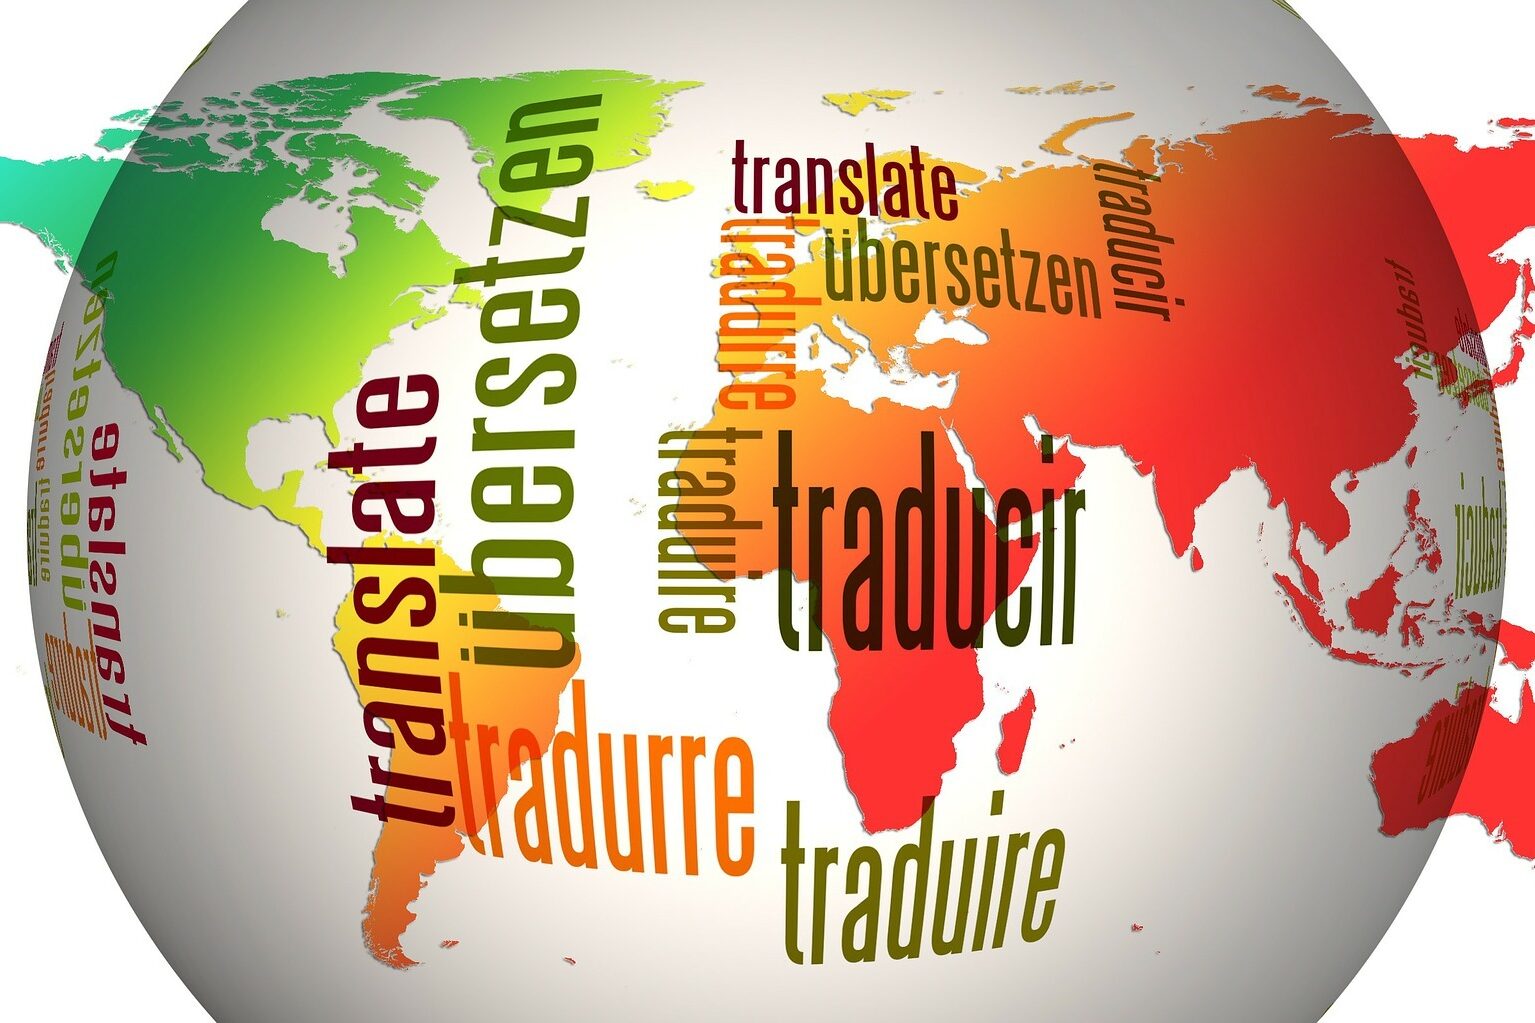 Erdkugel mit Wörtern in verschiedenen Sprachen zur Veranschaulichung von Sprachreisen